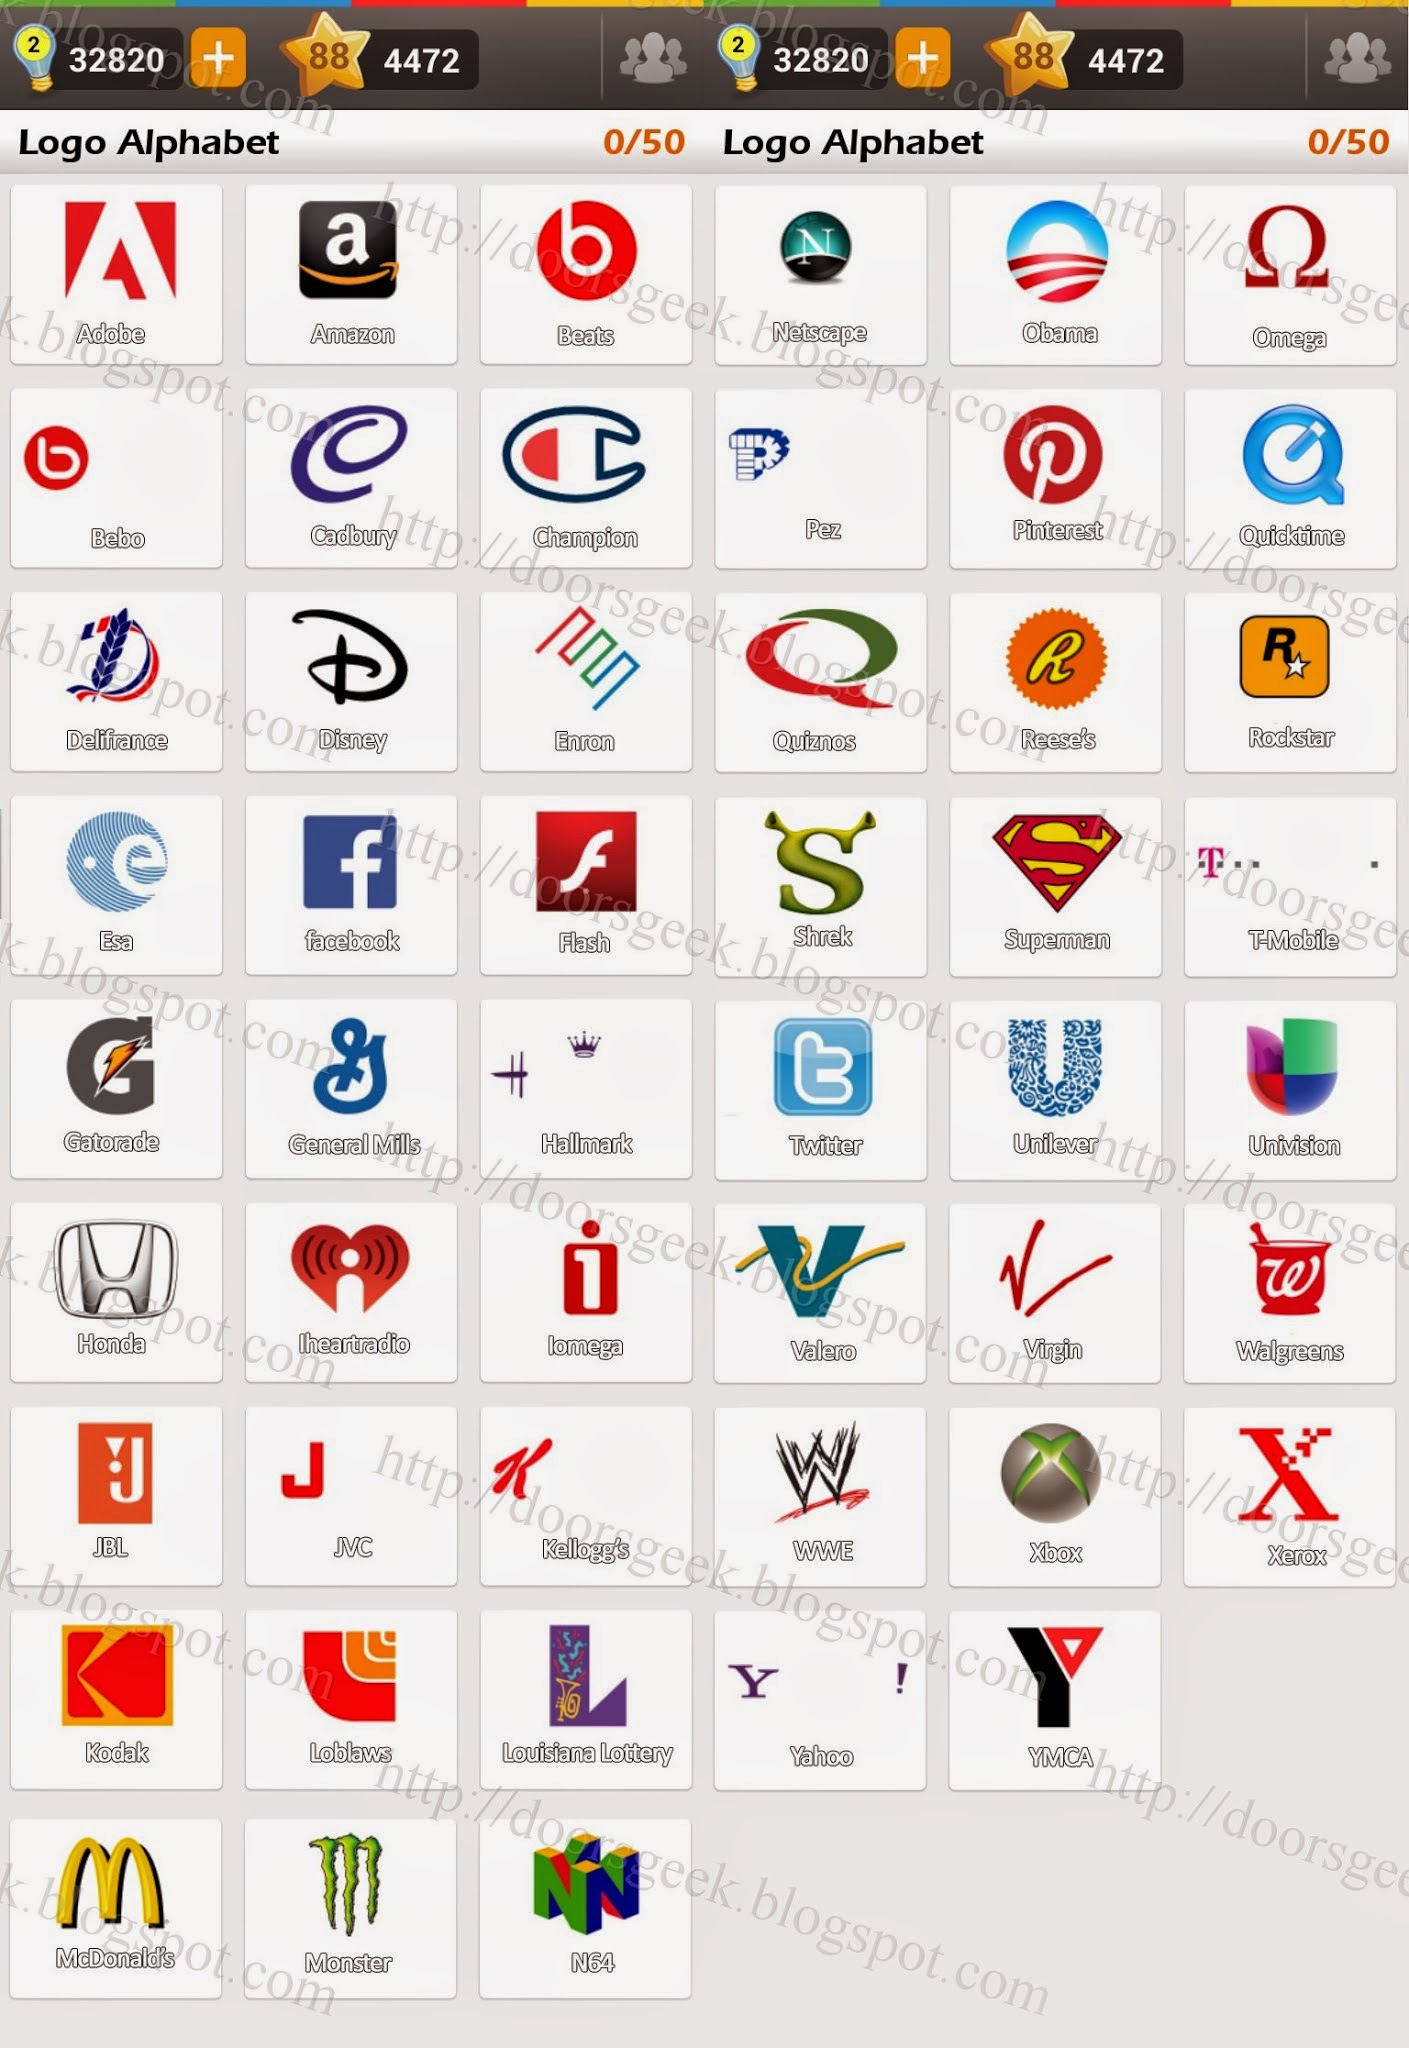 Byen Sløset kantsten Logo Game: Guess the Brand [Bonus] Logo Alphabet ~ Doors Geek